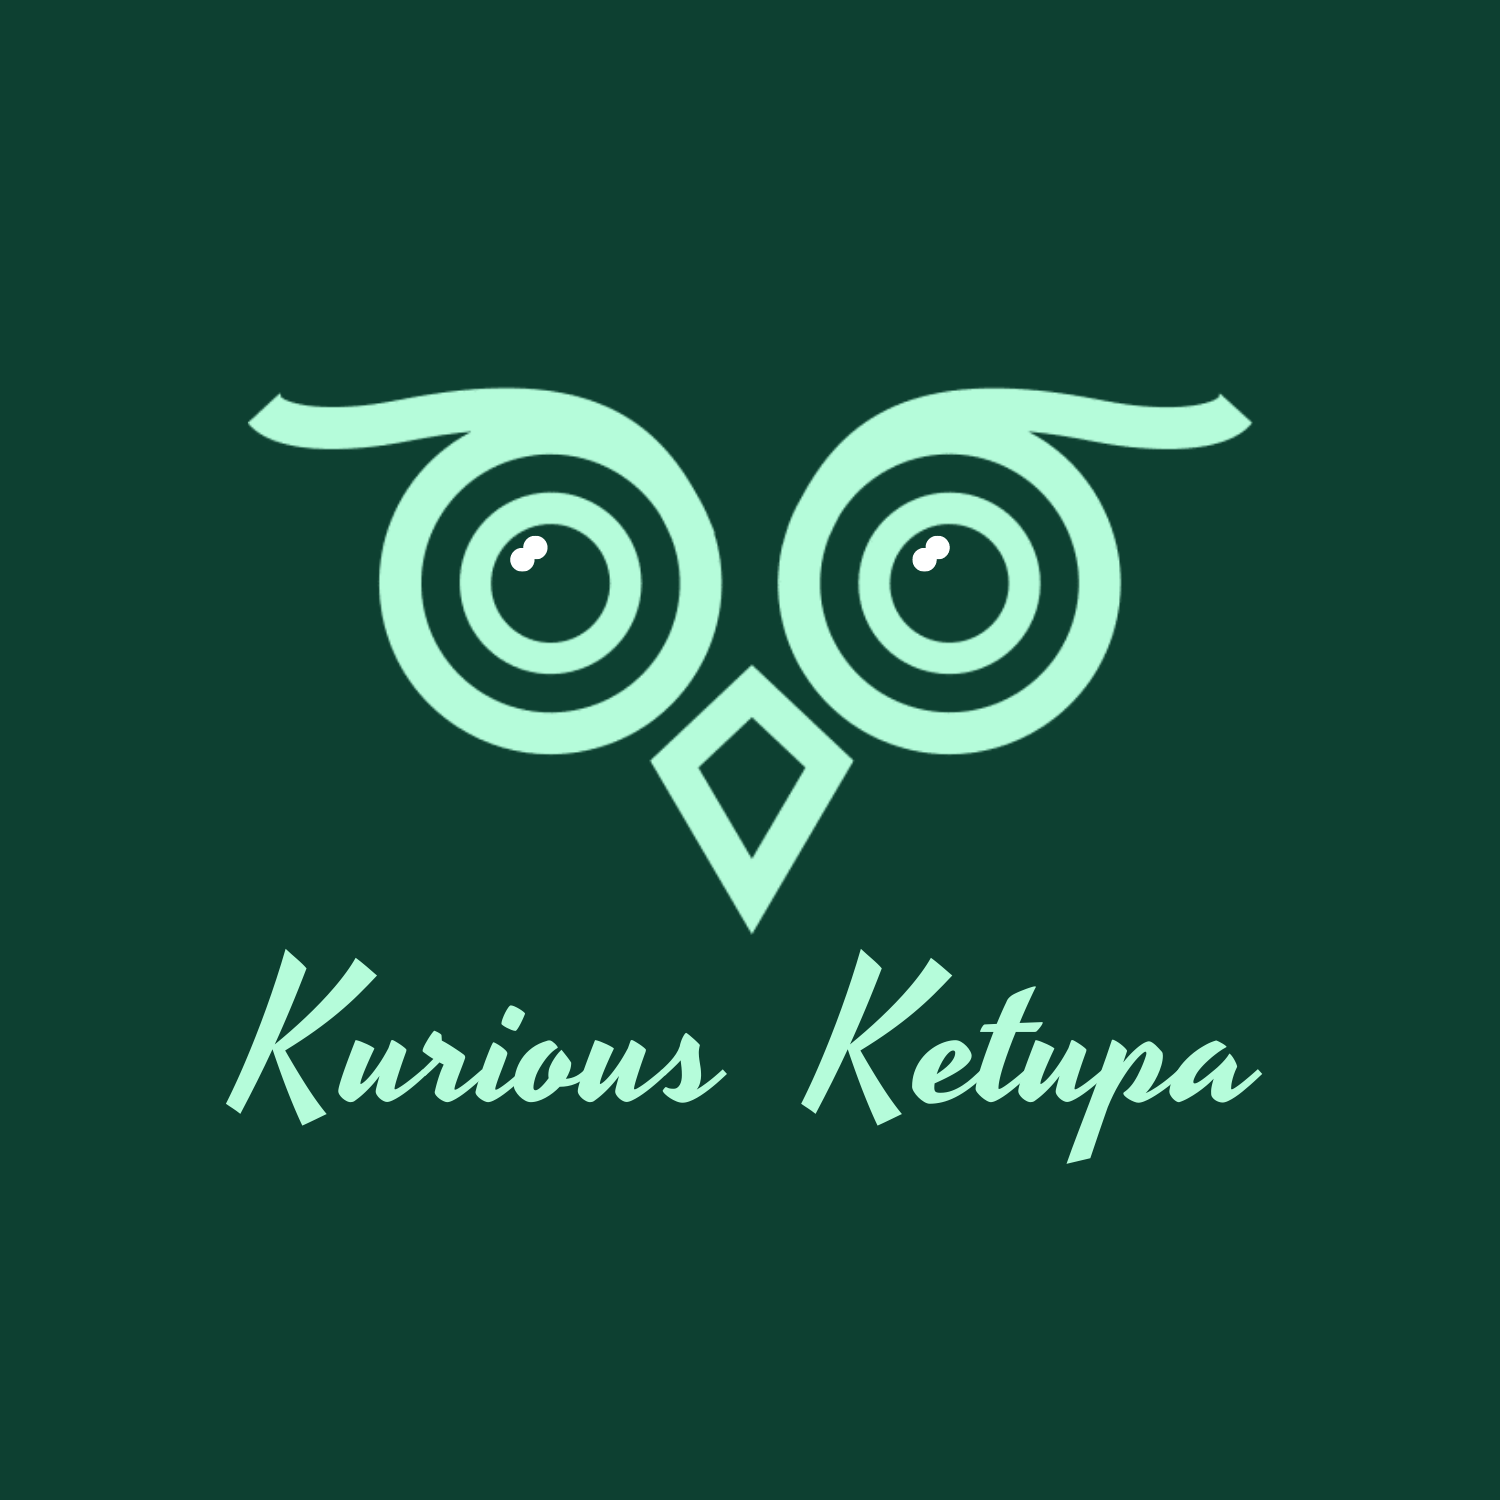 Kurious Ketupa